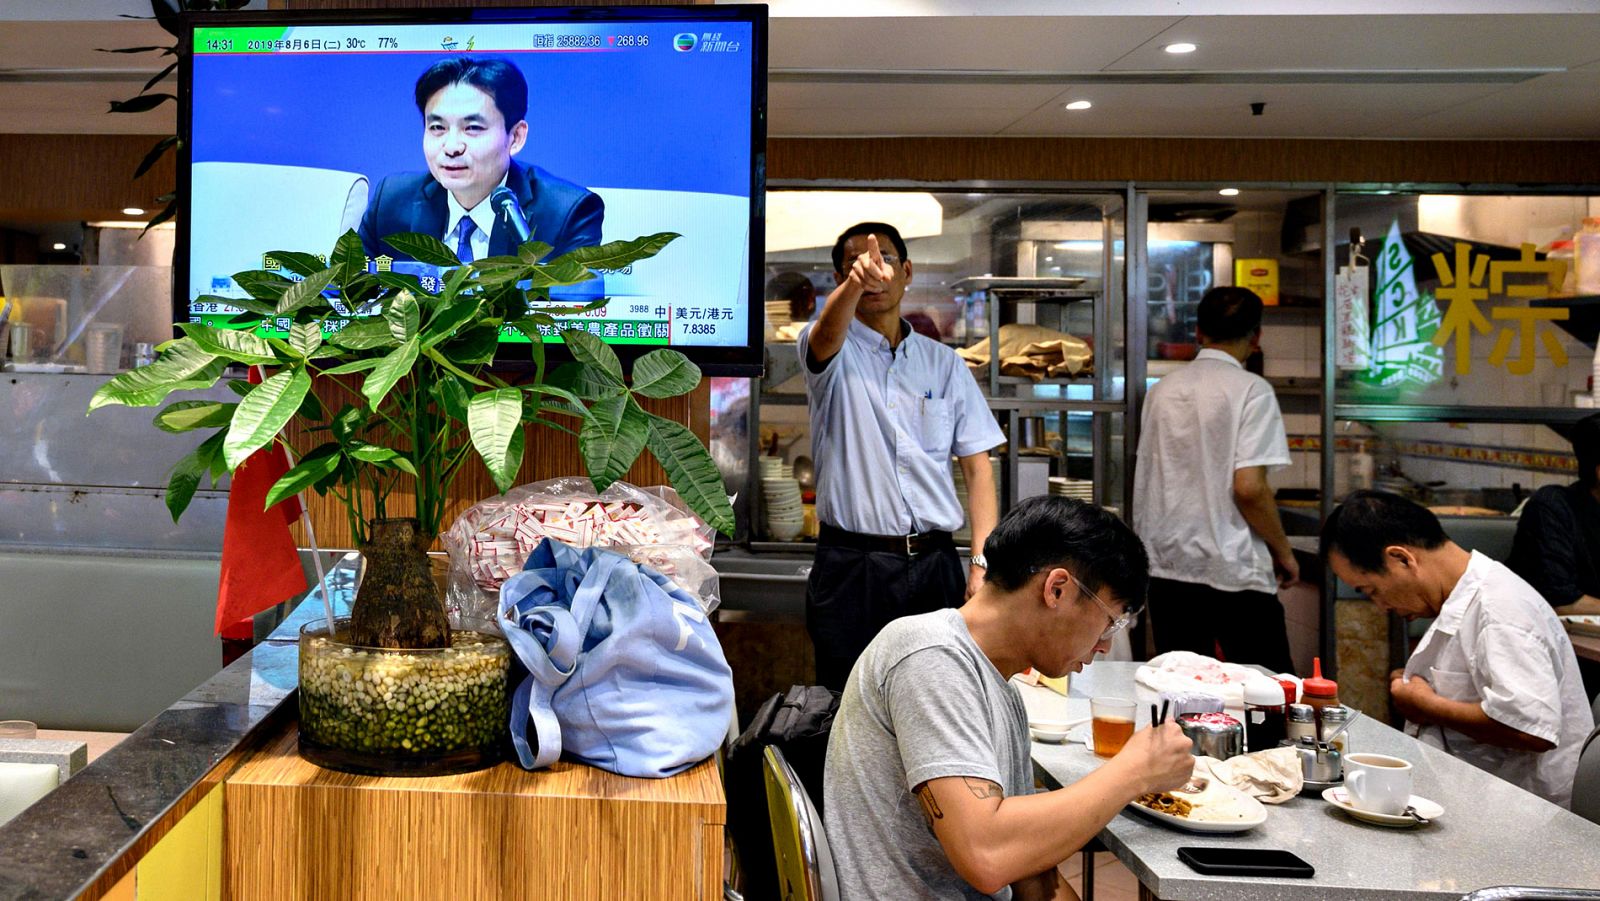 Una televisión muestra la rueda de prensa del portavoz del Gobierno chino, Yang Guang, en un restaurante de Hong Kong